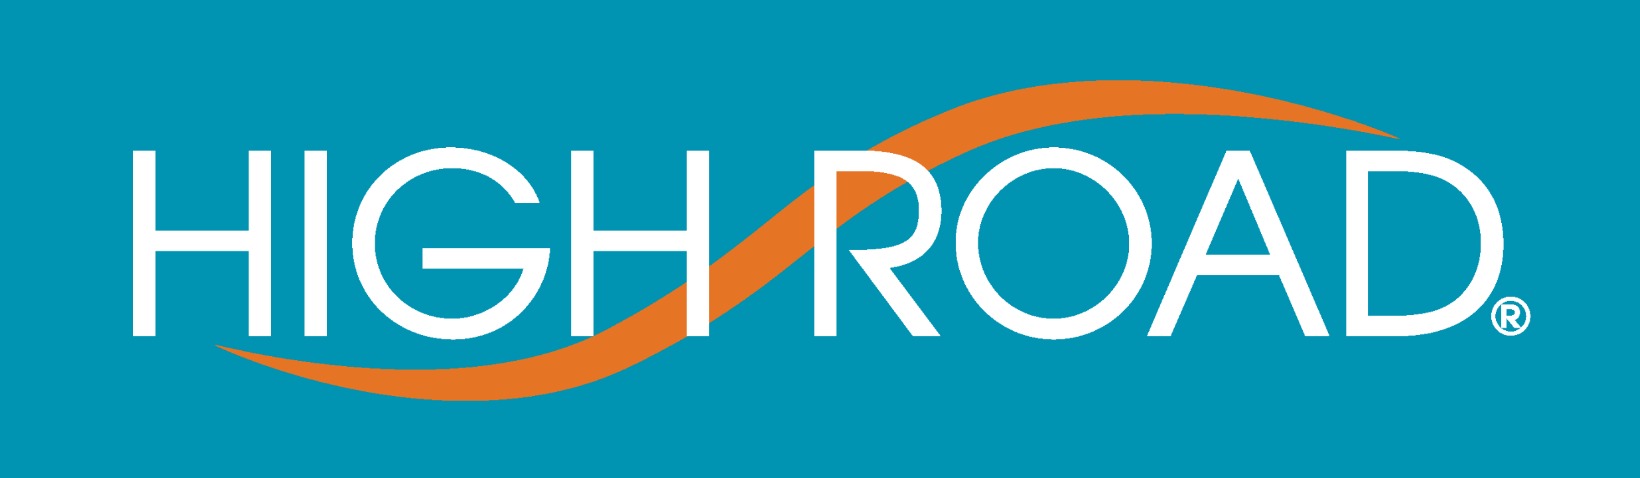 High_Road_Organizer_logo.jpg